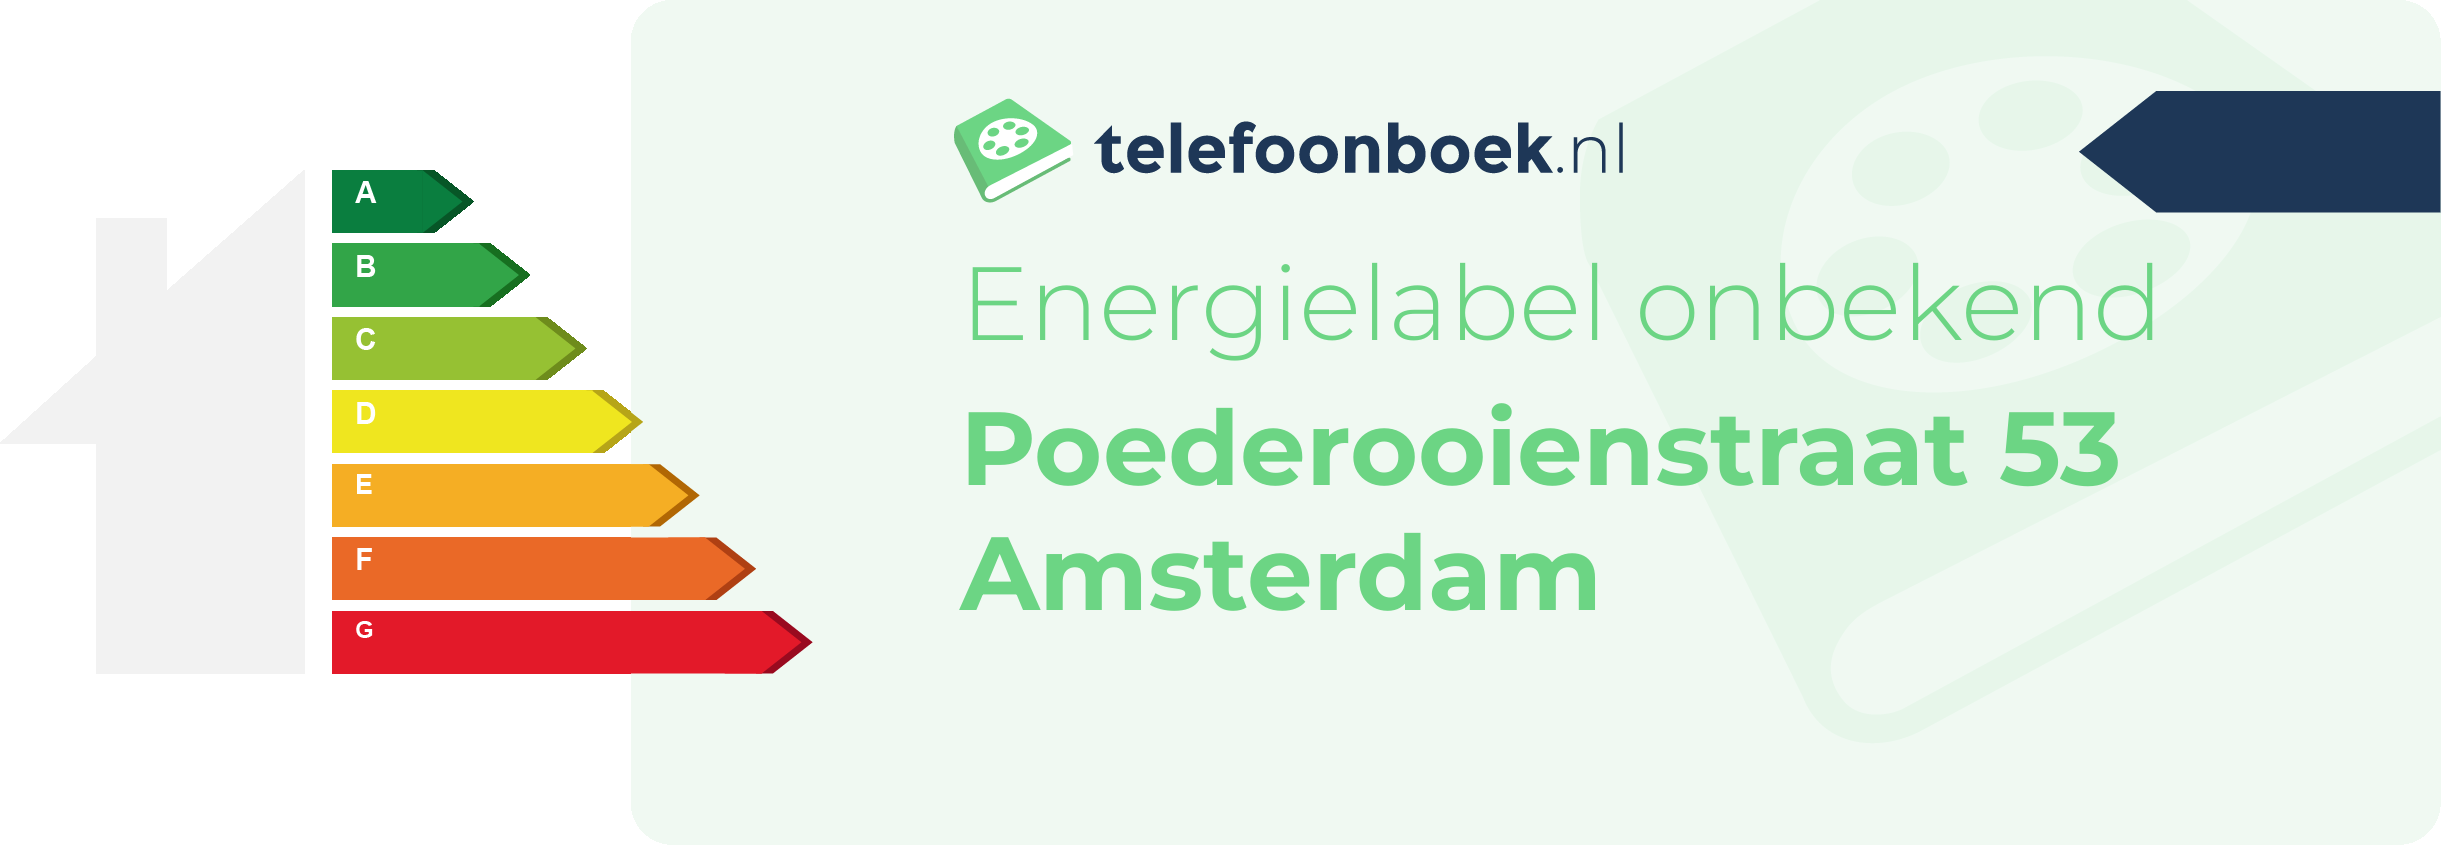 Energielabel Poederooienstraat 53 Amsterdam